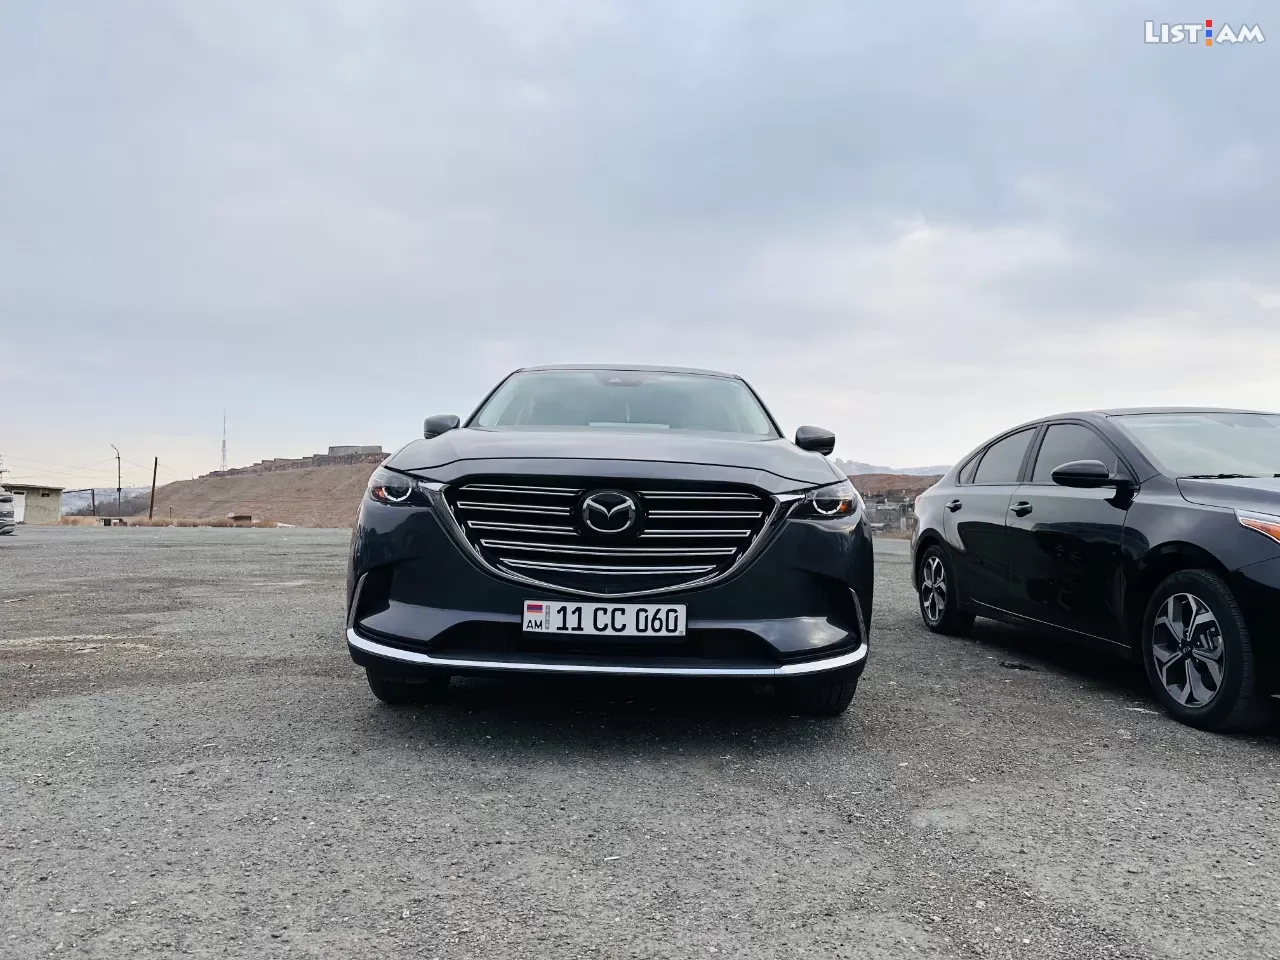 Mazda CX-9, 2.5 լ, 2018 թ. - Ավտոմեքենաներ - List.am